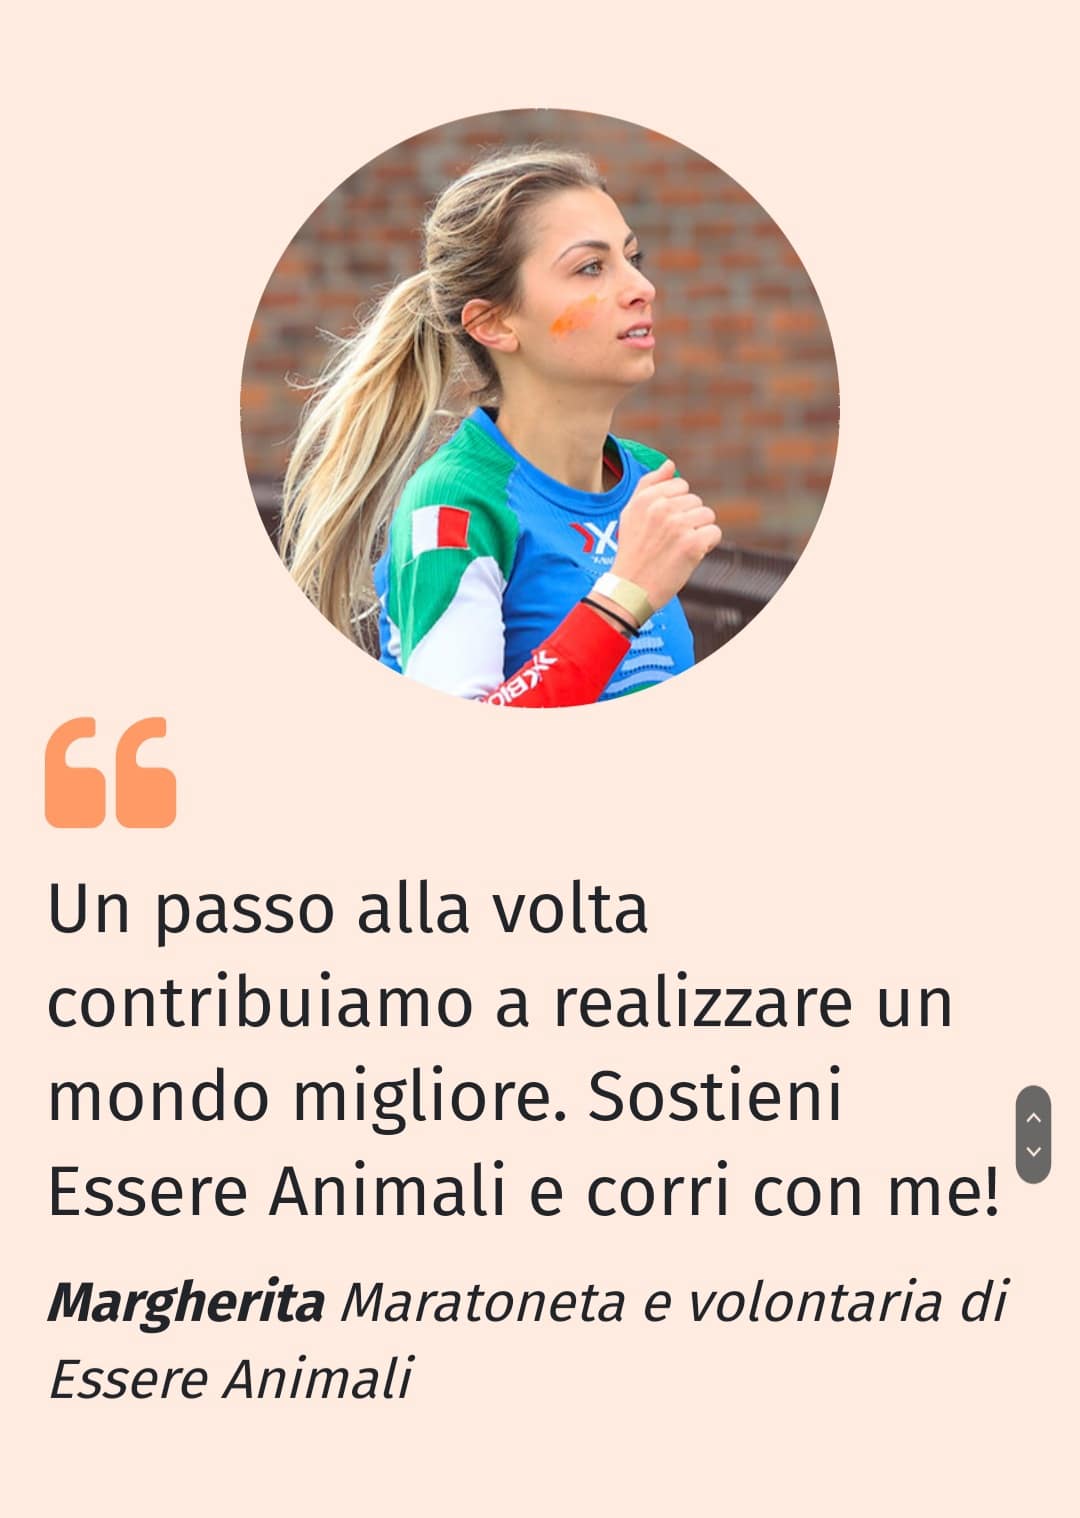 Margherita, volontaria di "Essere Animali" parteciperà alla maratona di Forlì il 9 ottobre